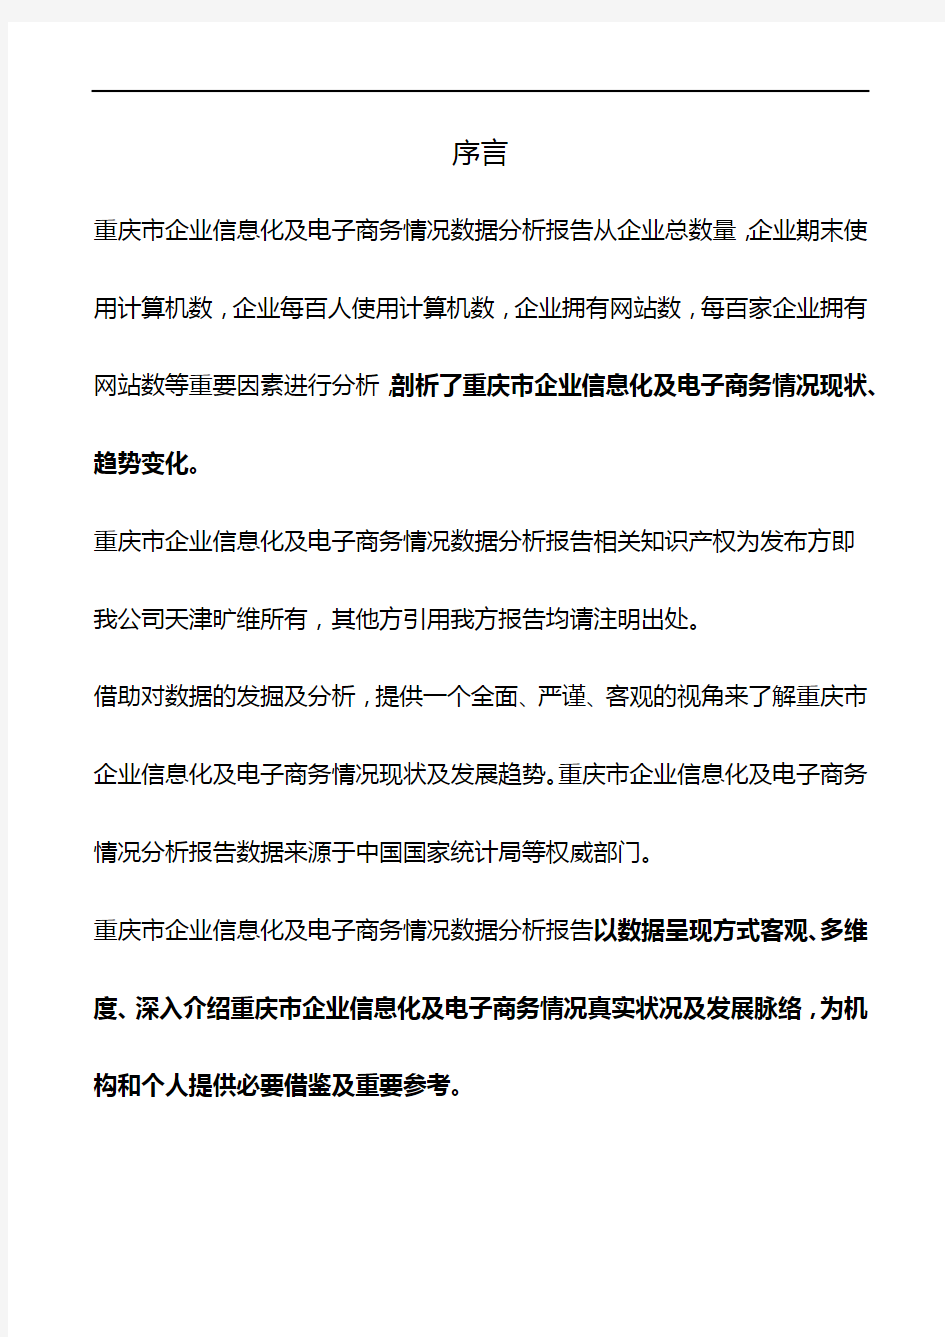 重庆市企业信息化及电子商务情况数据分析报告2018版